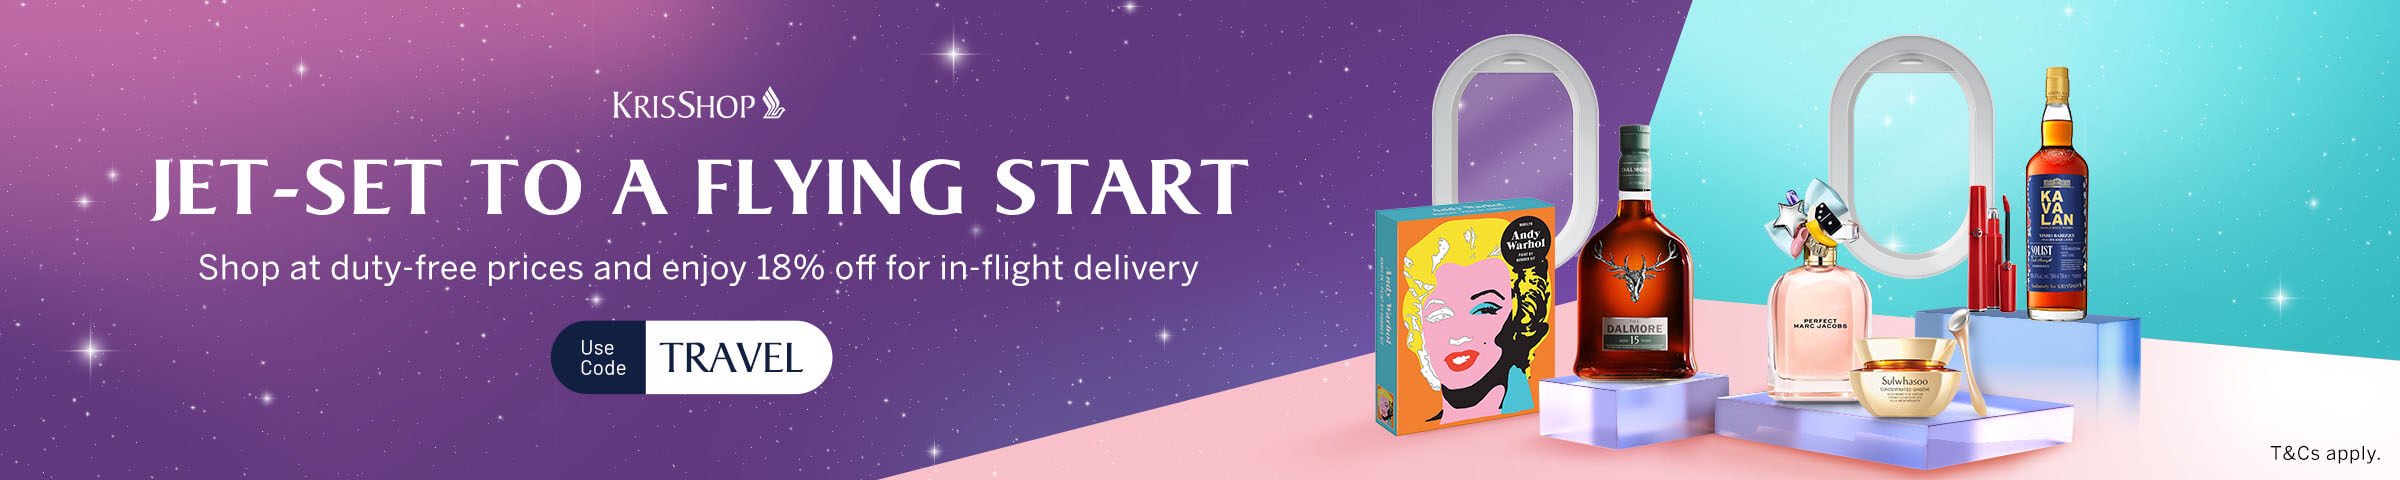 KrisShop Jet-Set To A Flying Start Promotion